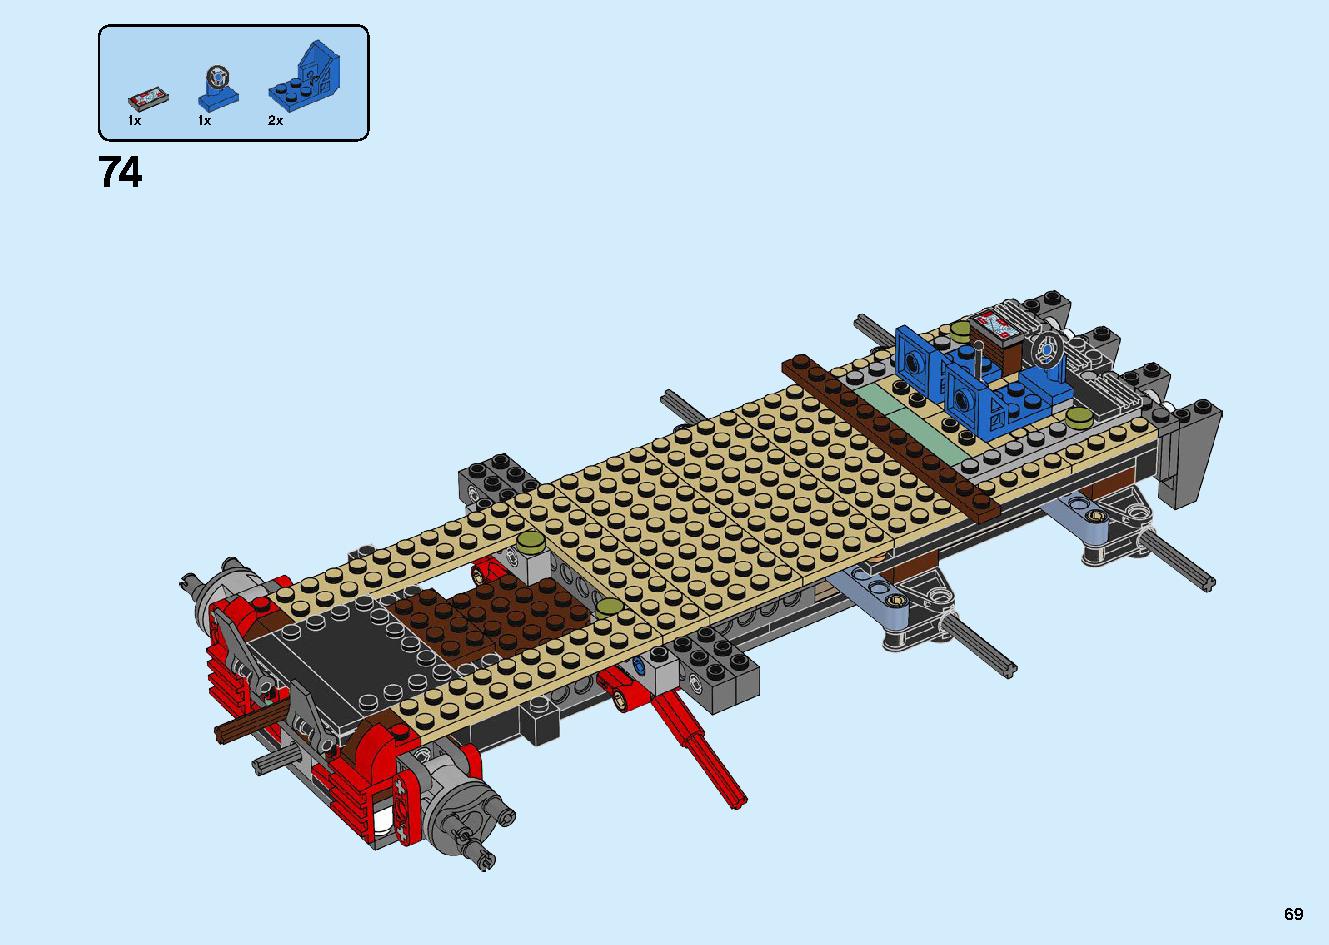 陸上戦艦バウンティ号 70677 レゴの商品情報 レゴの説明書・組立方法 69 page